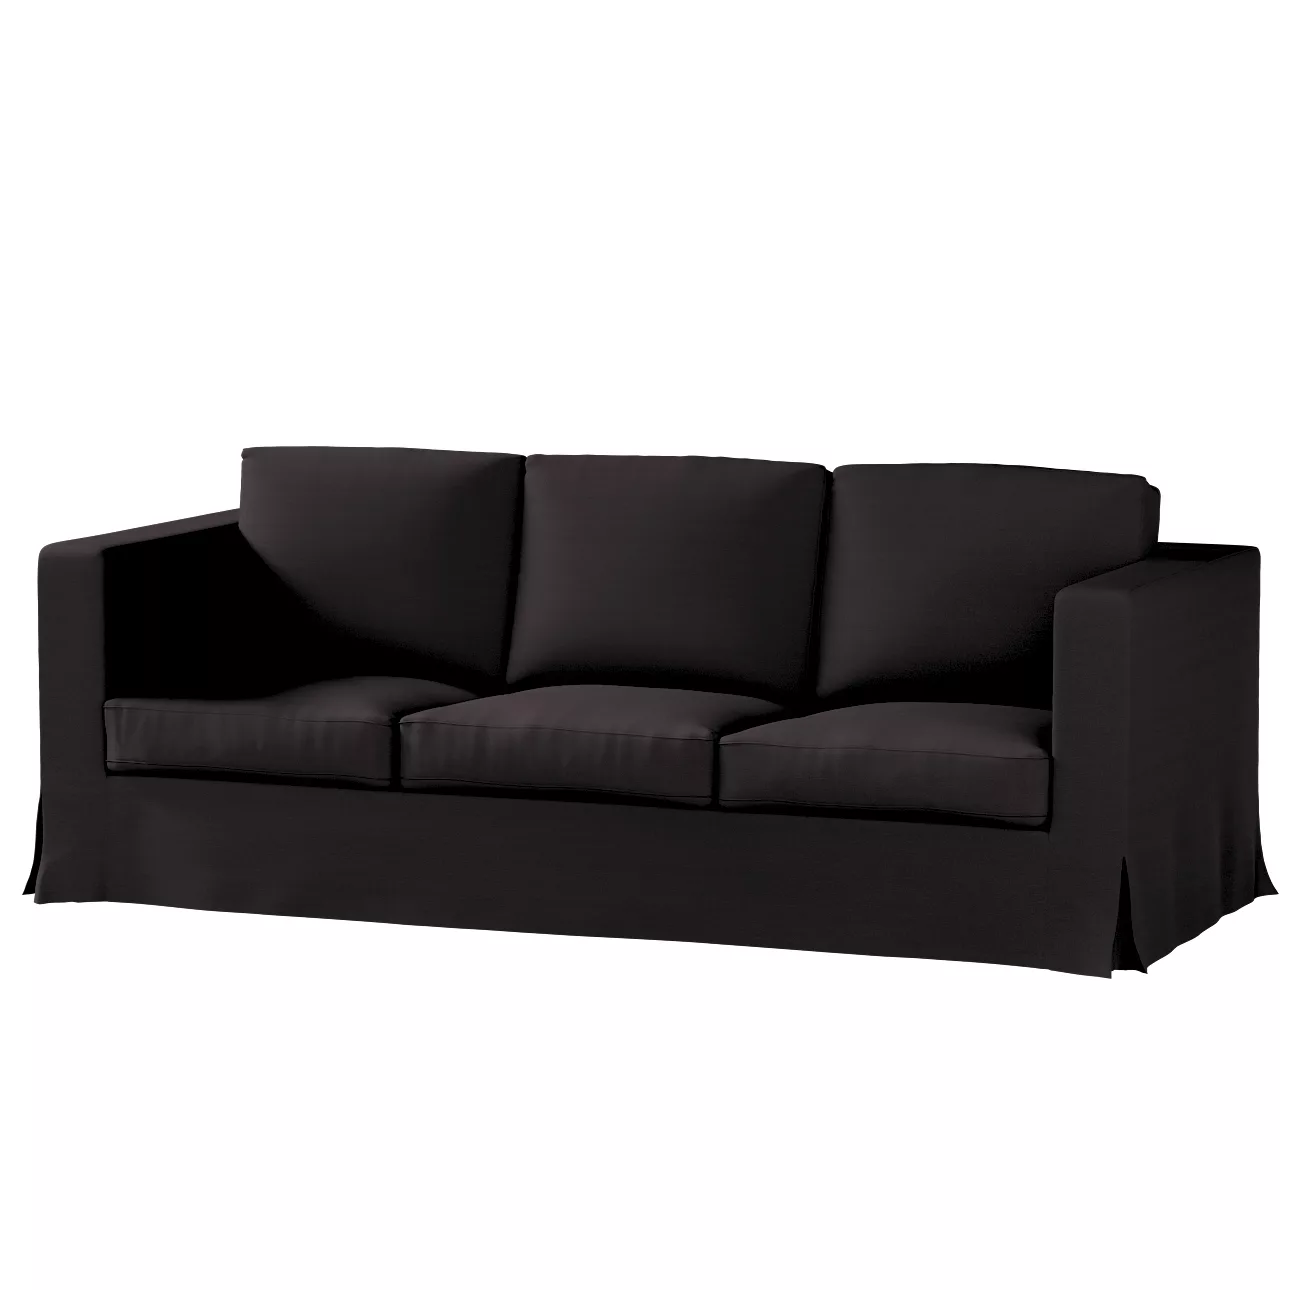 Bezug für Karlanda 3-Sitzer Sofa nicht ausklappbar, lang, anthrazit, Bezug günstig online kaufen